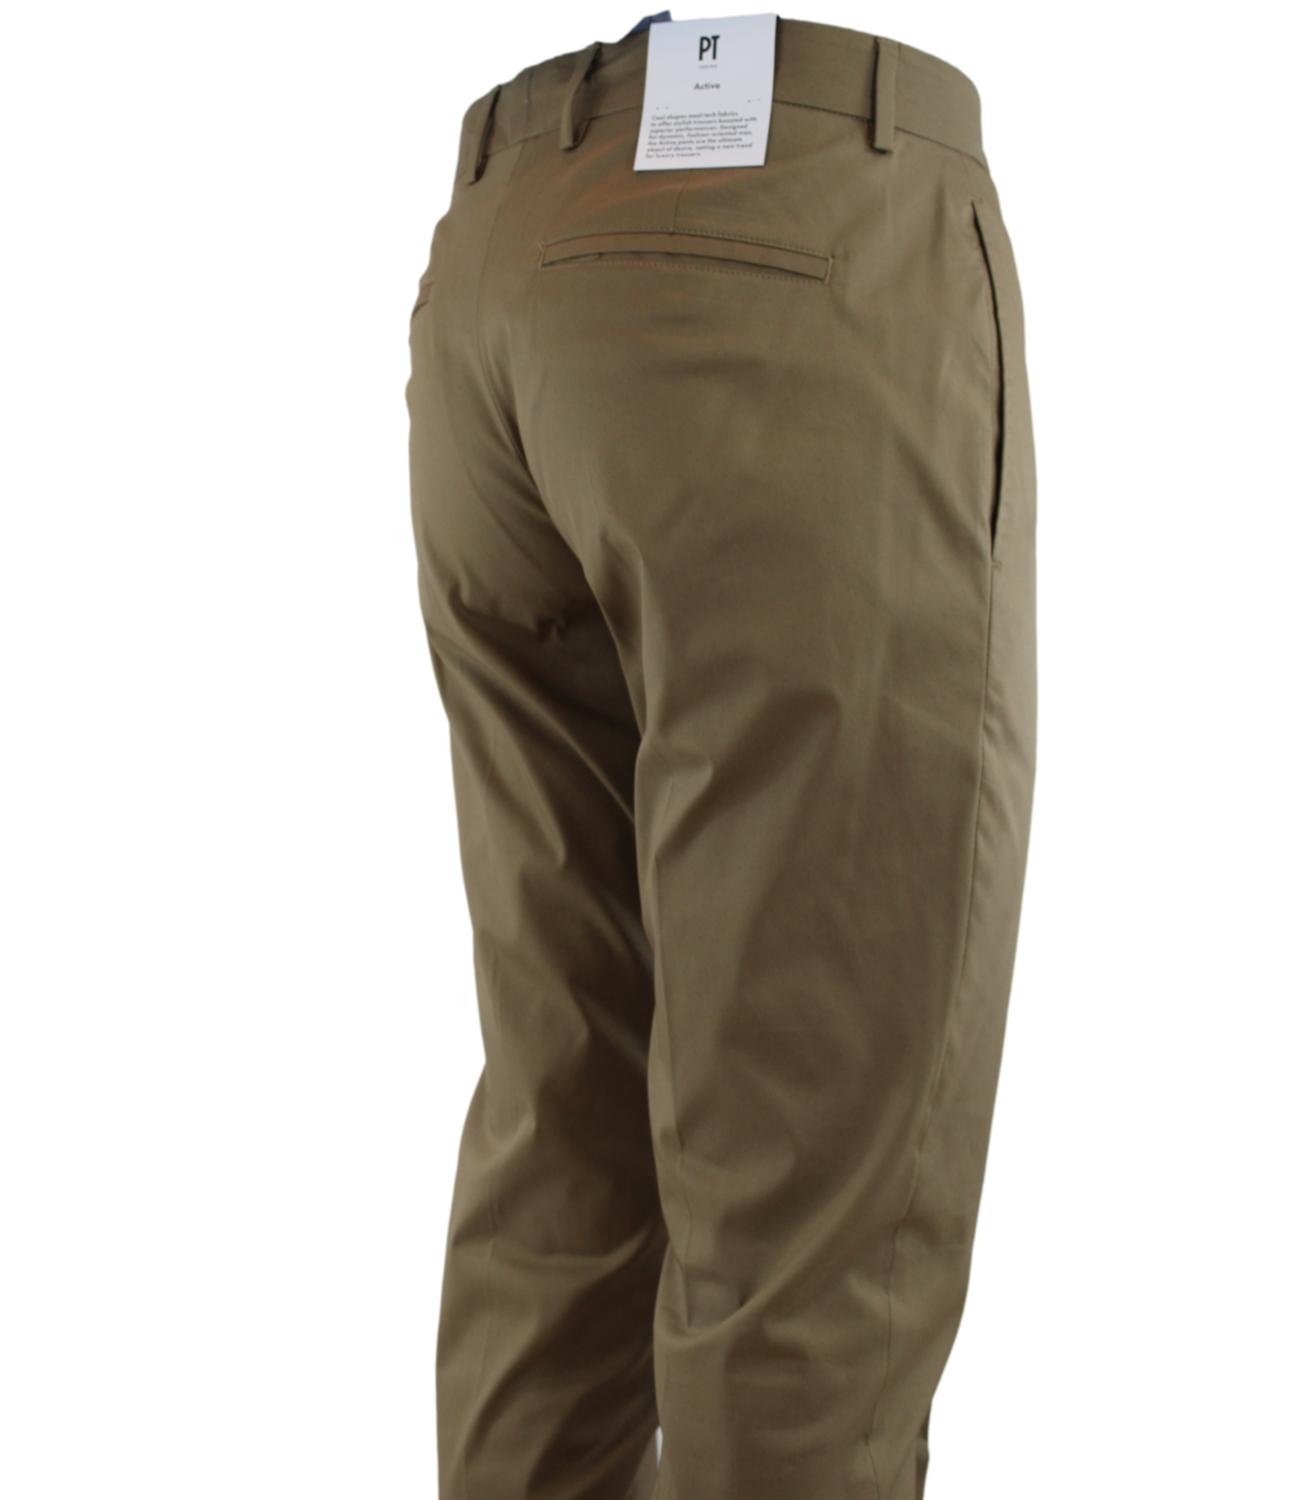 Pantalone PT Torino tabacco in raso con zip L. 30